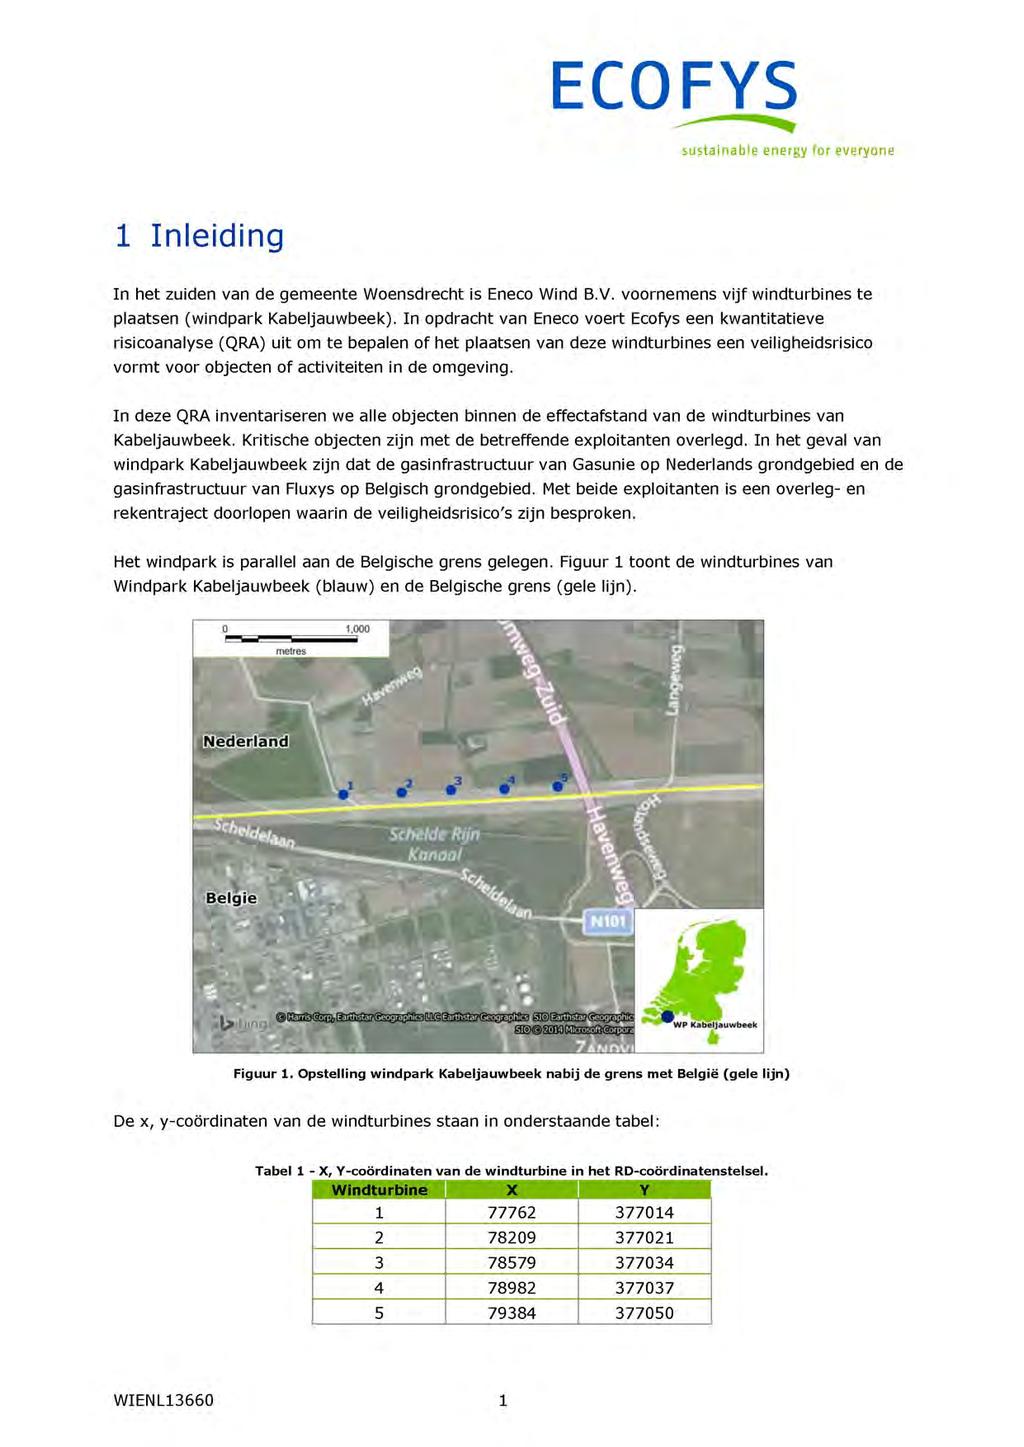 Inleiding In het zuiden van de gemeente Woensdrecht is Eneco Wind B.V. voornemens vijf windturbines te plaatsen (windpark Kabeljauwbeek).